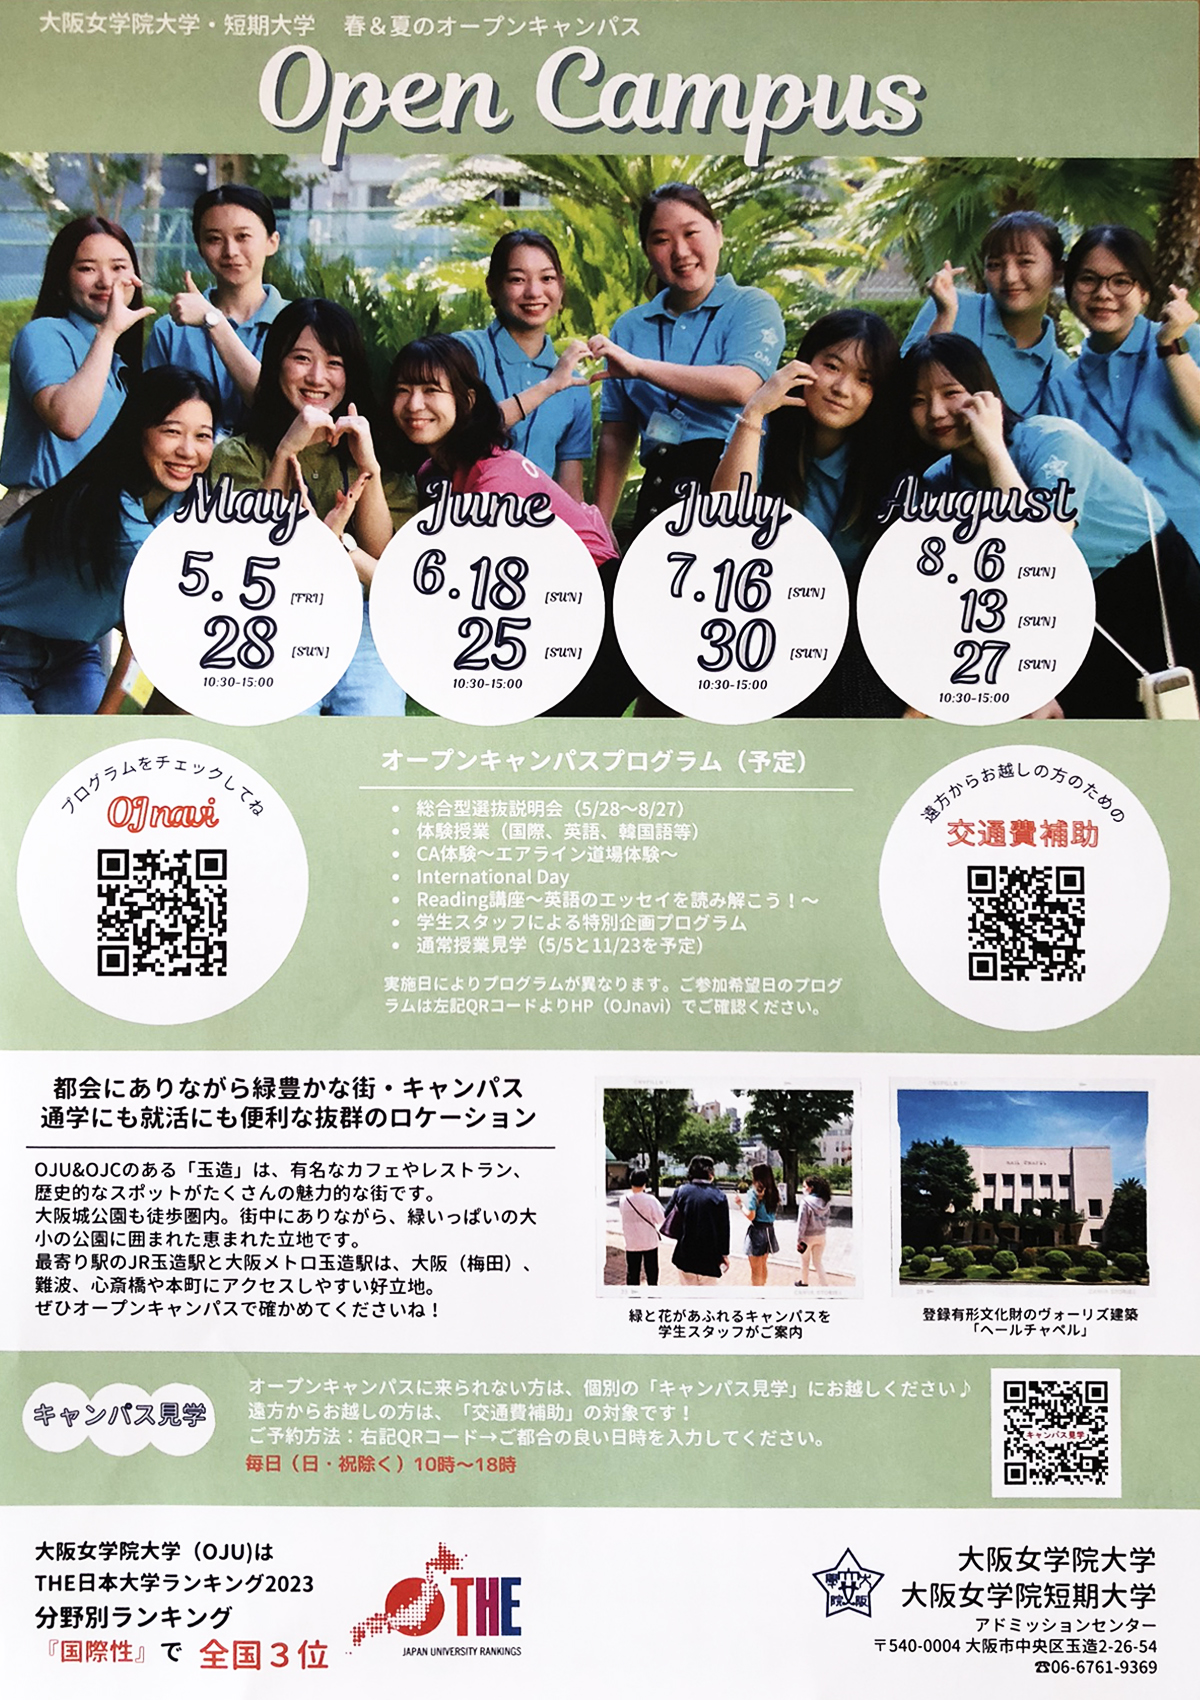 学生スタッフ企画も！大阪女学院大学 夏のオープンキャンパス 6/18(日)・26日(日)